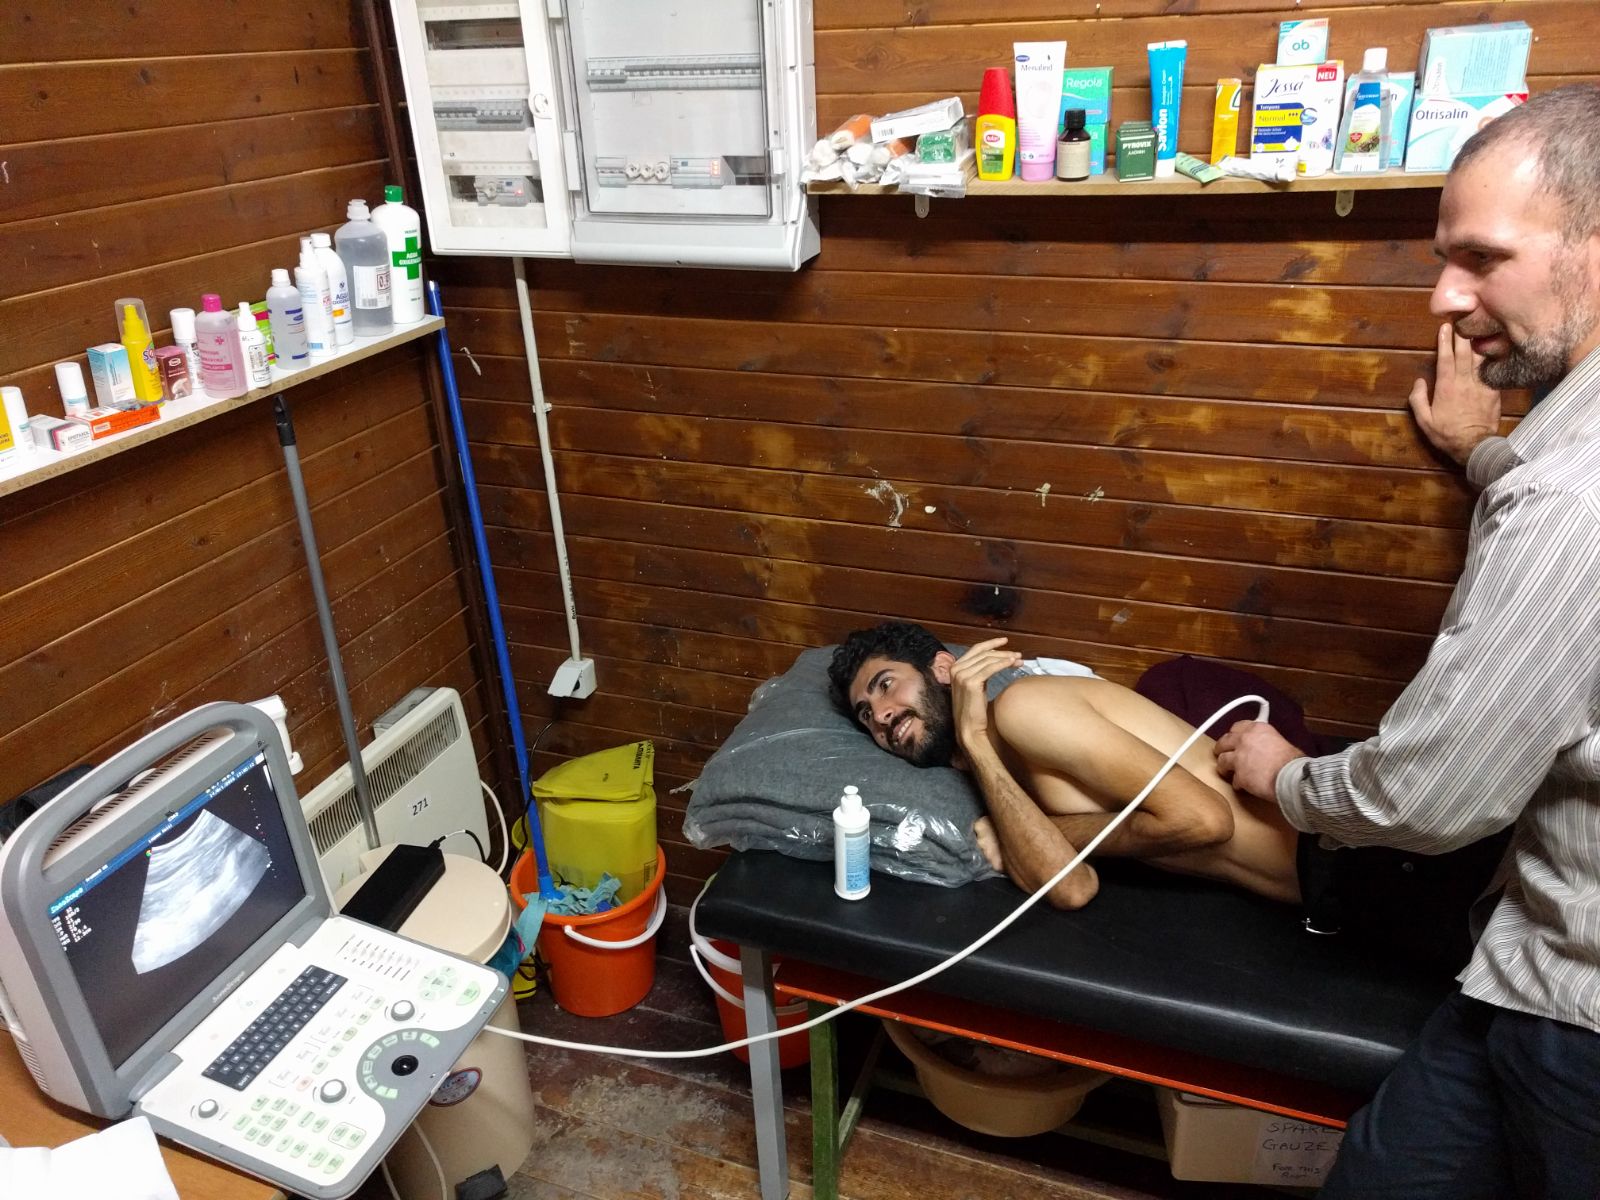 aidhoc - Ultraschall - medizinische hilfe flüchtlingscamp griechenland